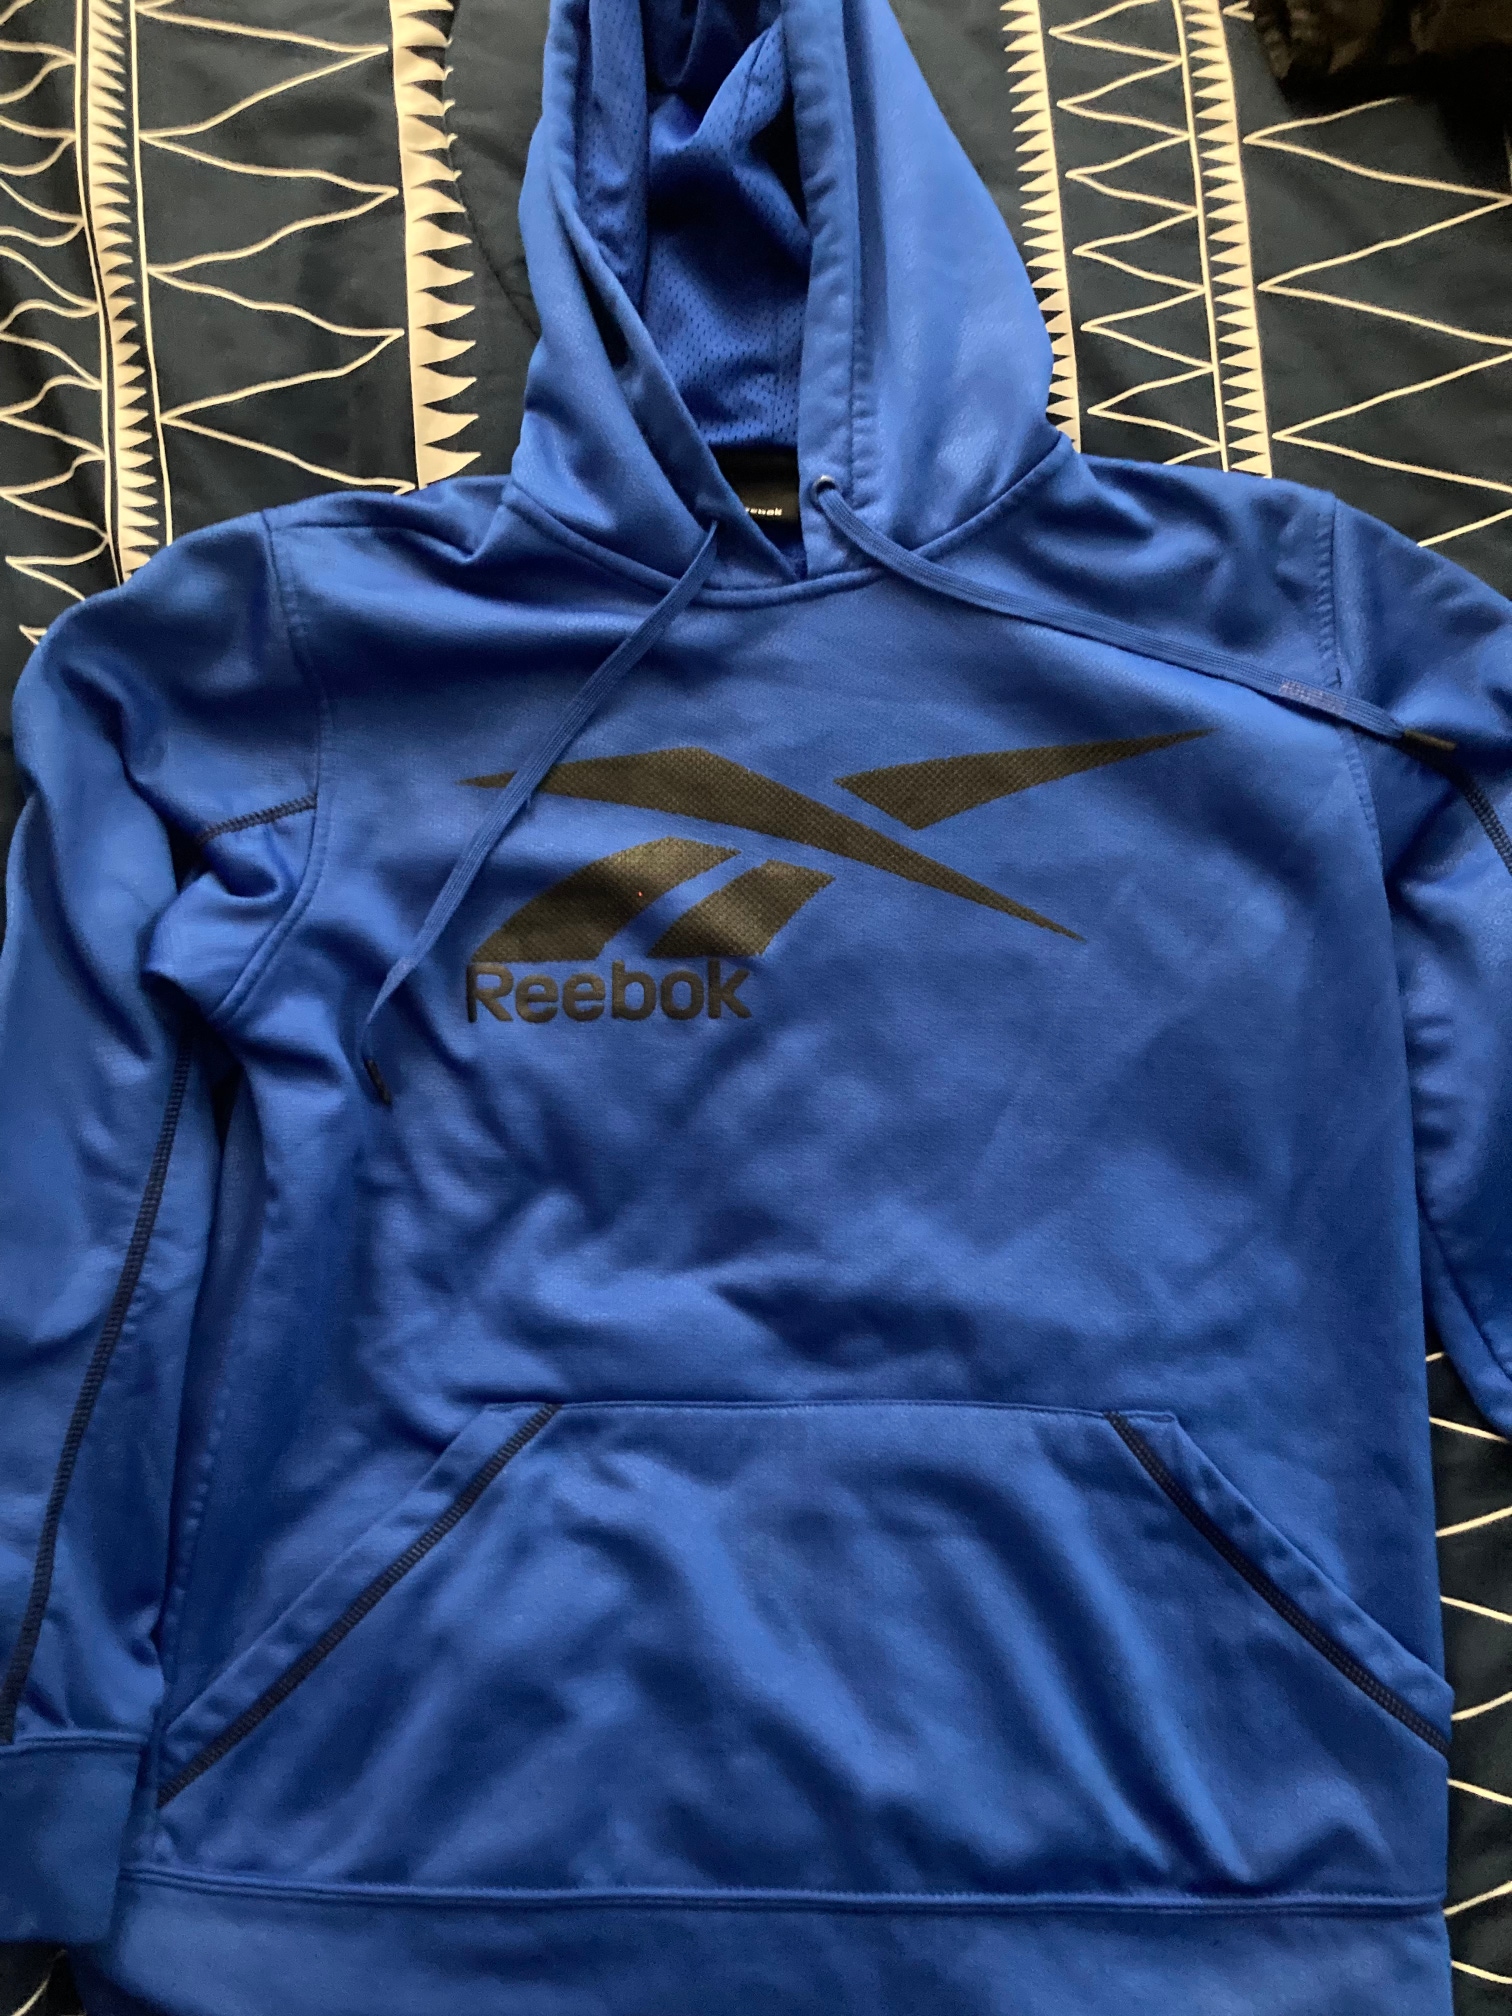 Blue Used Men's Medium/Large Reebok Sweatshirt